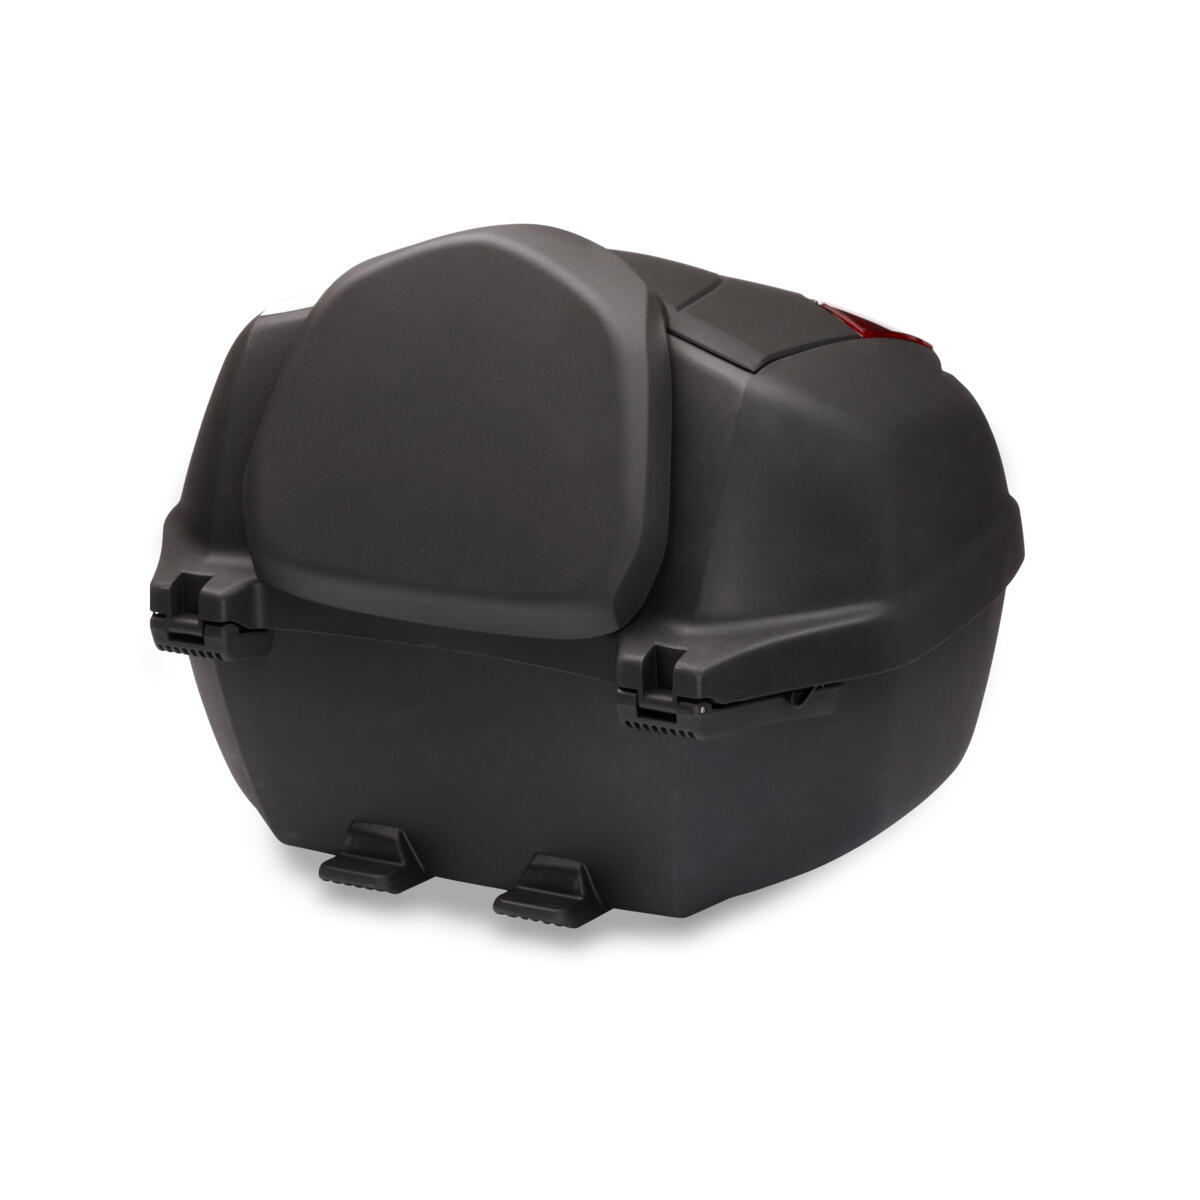 Hvis du bruger din TRACER 7 til din daglige tur til arbejde i byen, giver Urban Packs 39-liters aflåselige sorte topboks dig fleksibiliteten til at opbevare dine ejendele sikkert. Og med en praktisk USB-adapter kan du benytte gps eller strømenheder